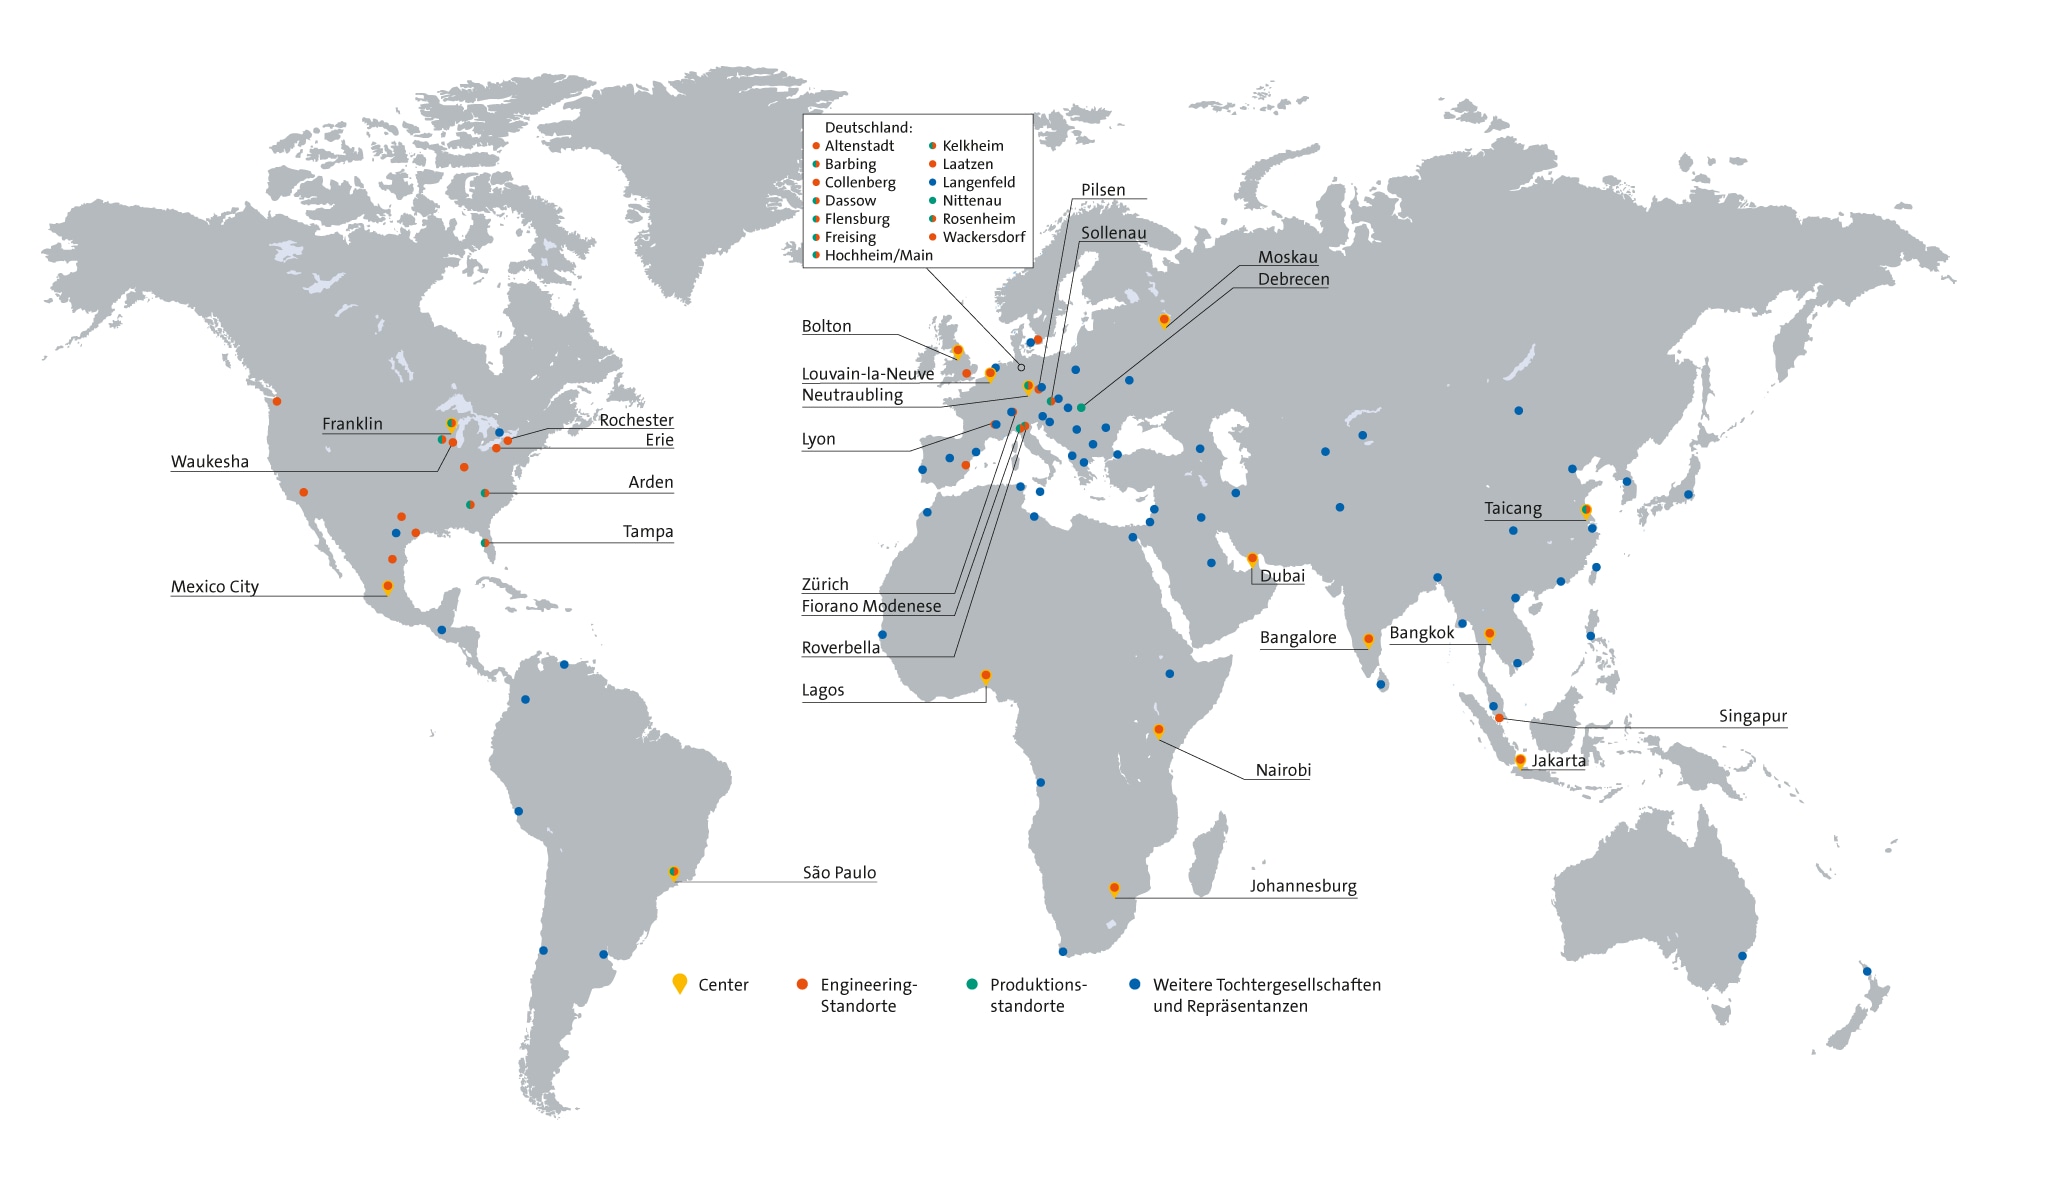 Krones Global Footprint